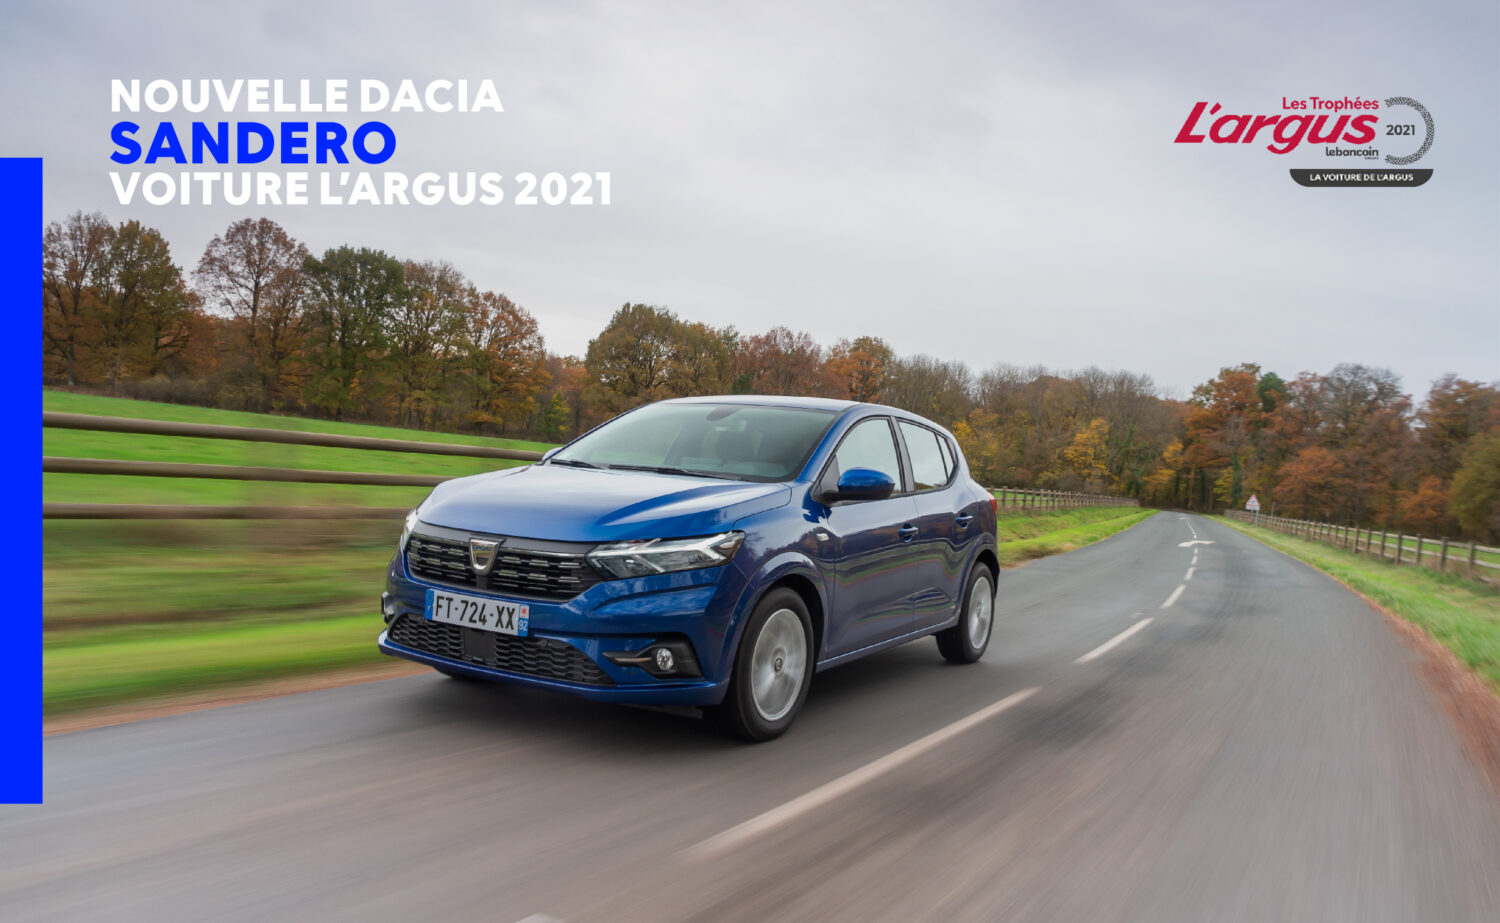 2021 - Dacia Sandero voiture L’argus de l’année 2021